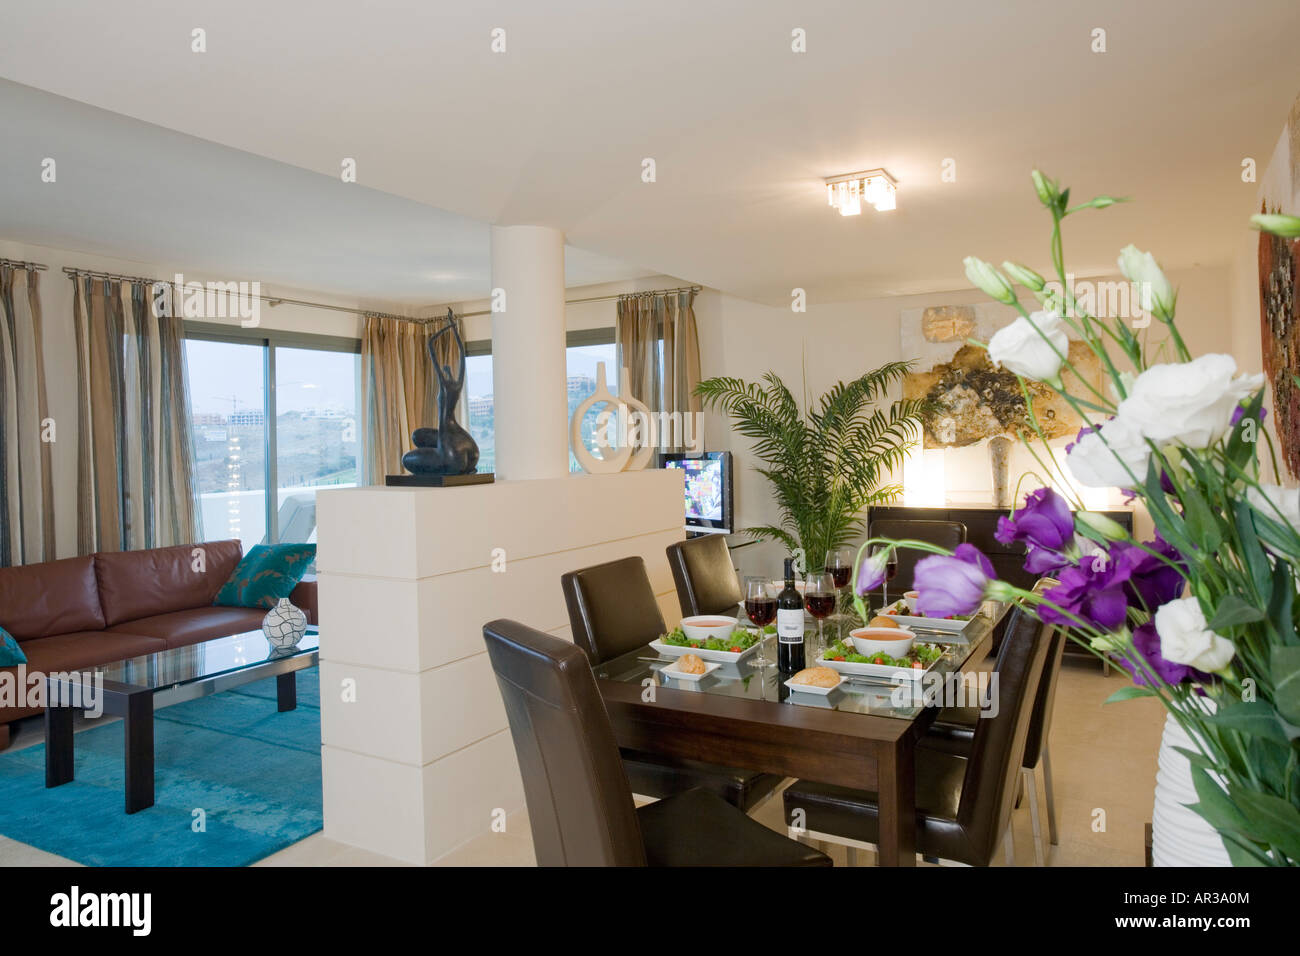 Innere des modernes Apartment mit Essbereich mit Salat, Suppe und Wein am Tisch mit Blumen im Vordergrund Stockfoto